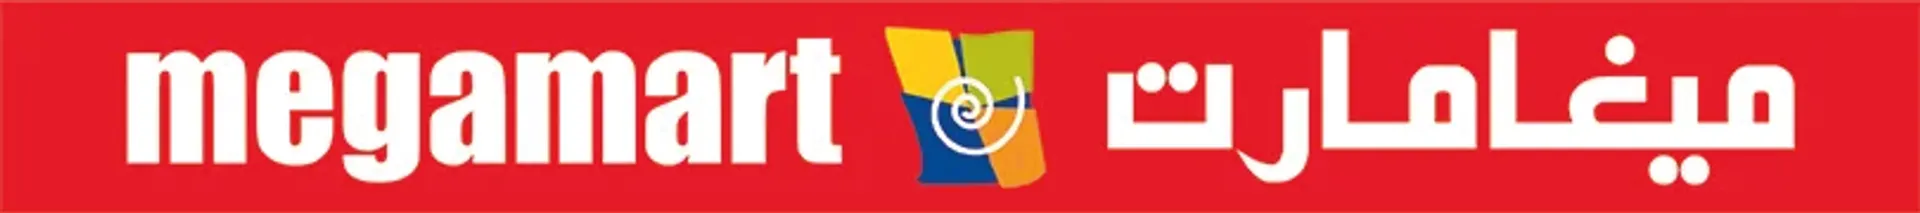 MEGAMART logo. Current catalogue